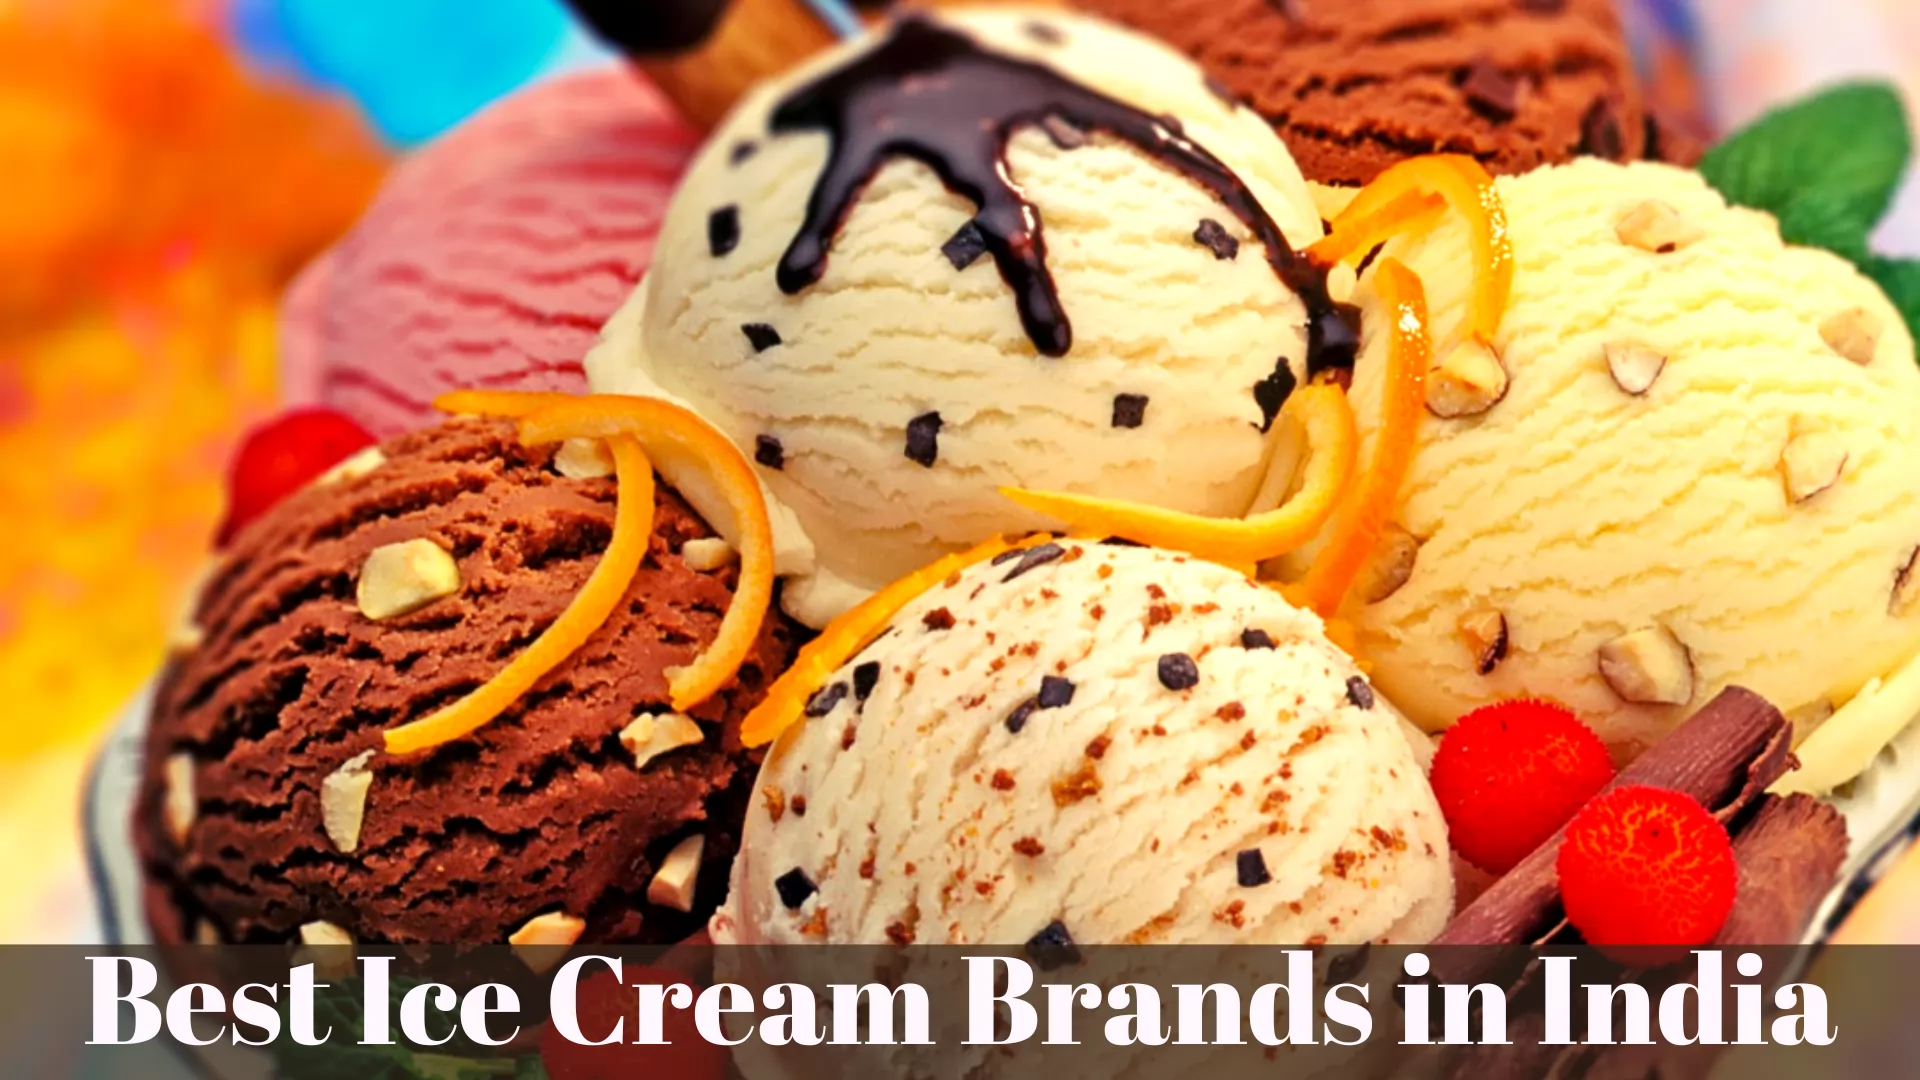 Best Ice Cream Brands in India